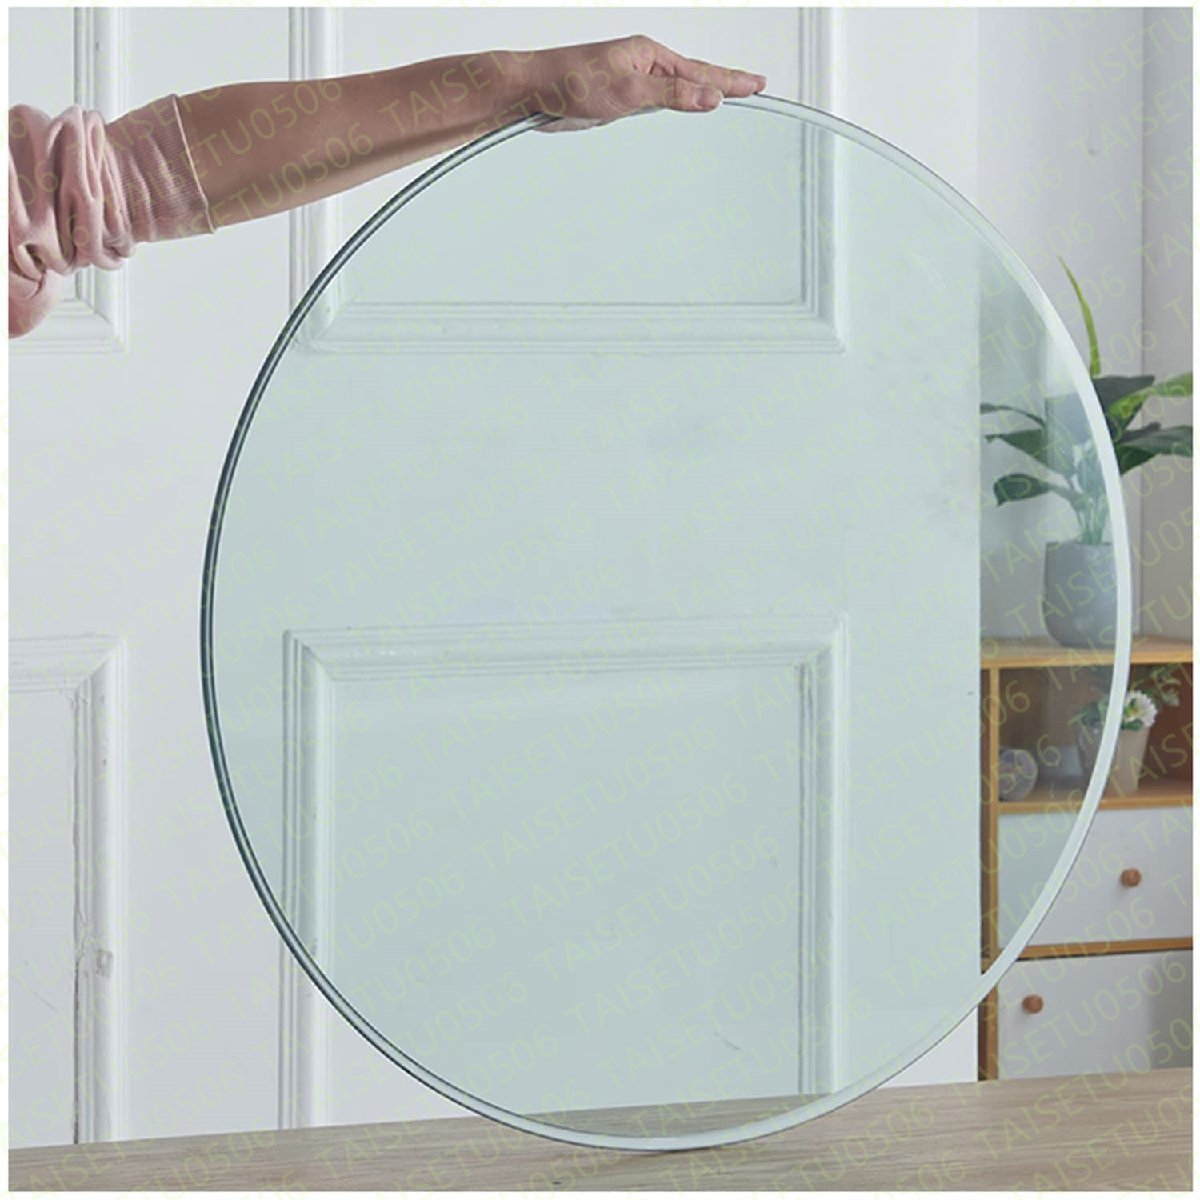 ガラス テーブル天板、円形 ガラス板 、厚み 9mm透明 強化ガラステーブルトップ 硝子板 耐熱板 DIY自作テーブテーブルトップ ( 80cm)の画像1